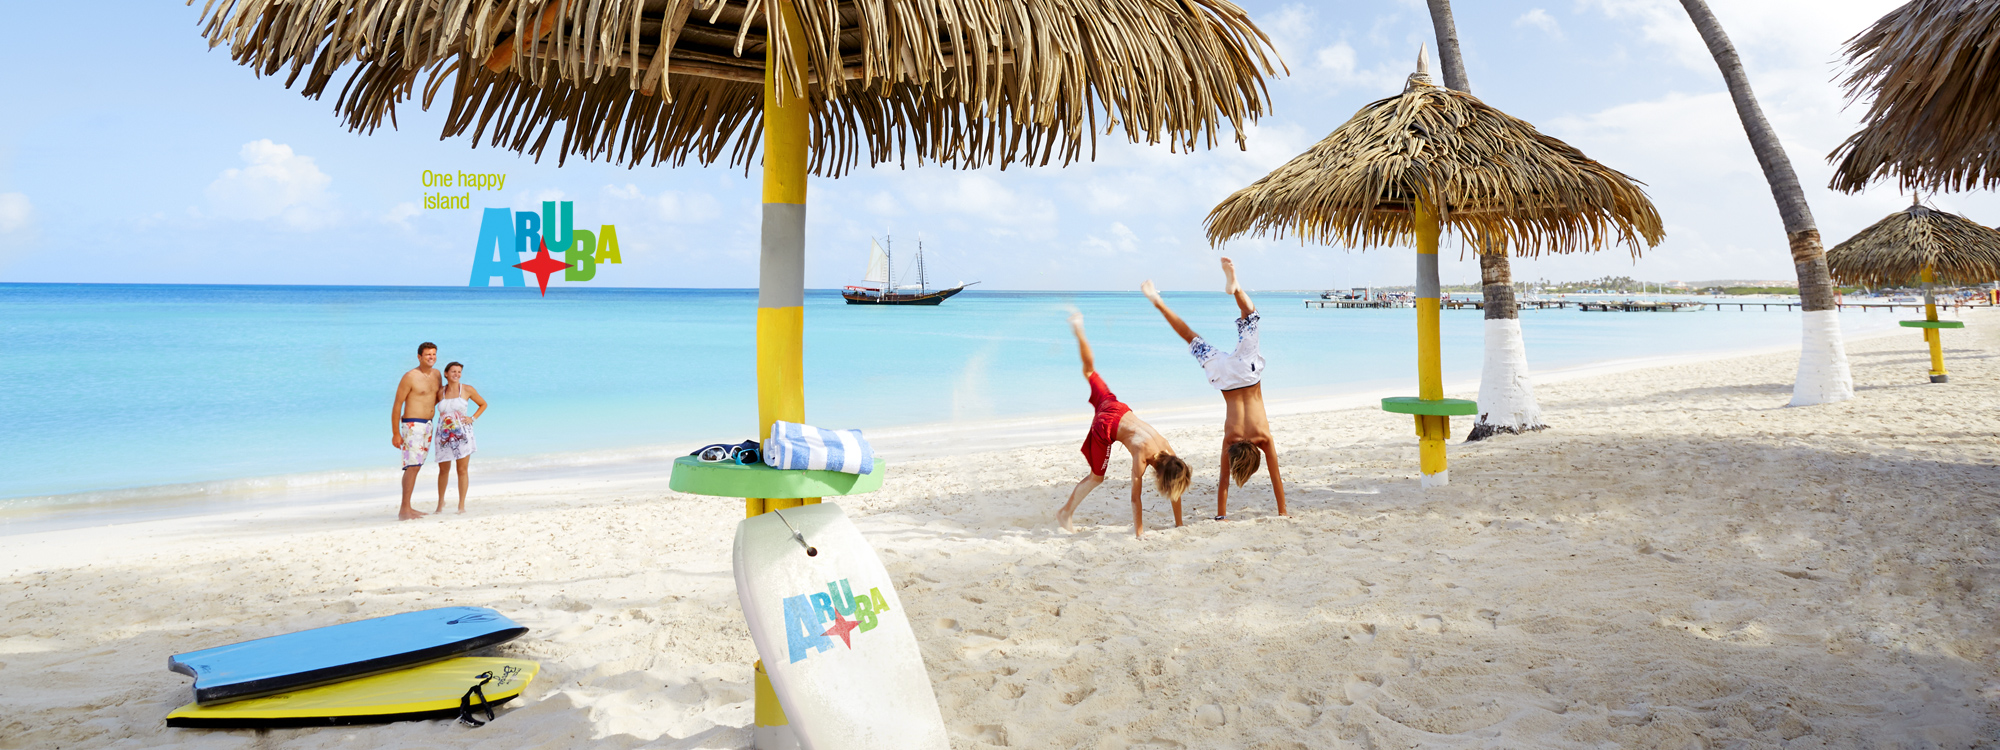 Curacao & Aruba & Bonaire, Coral Estate Luxury Resort vom 2022-11-25 bis 2022-12-02 für 1340 EUR p.P.